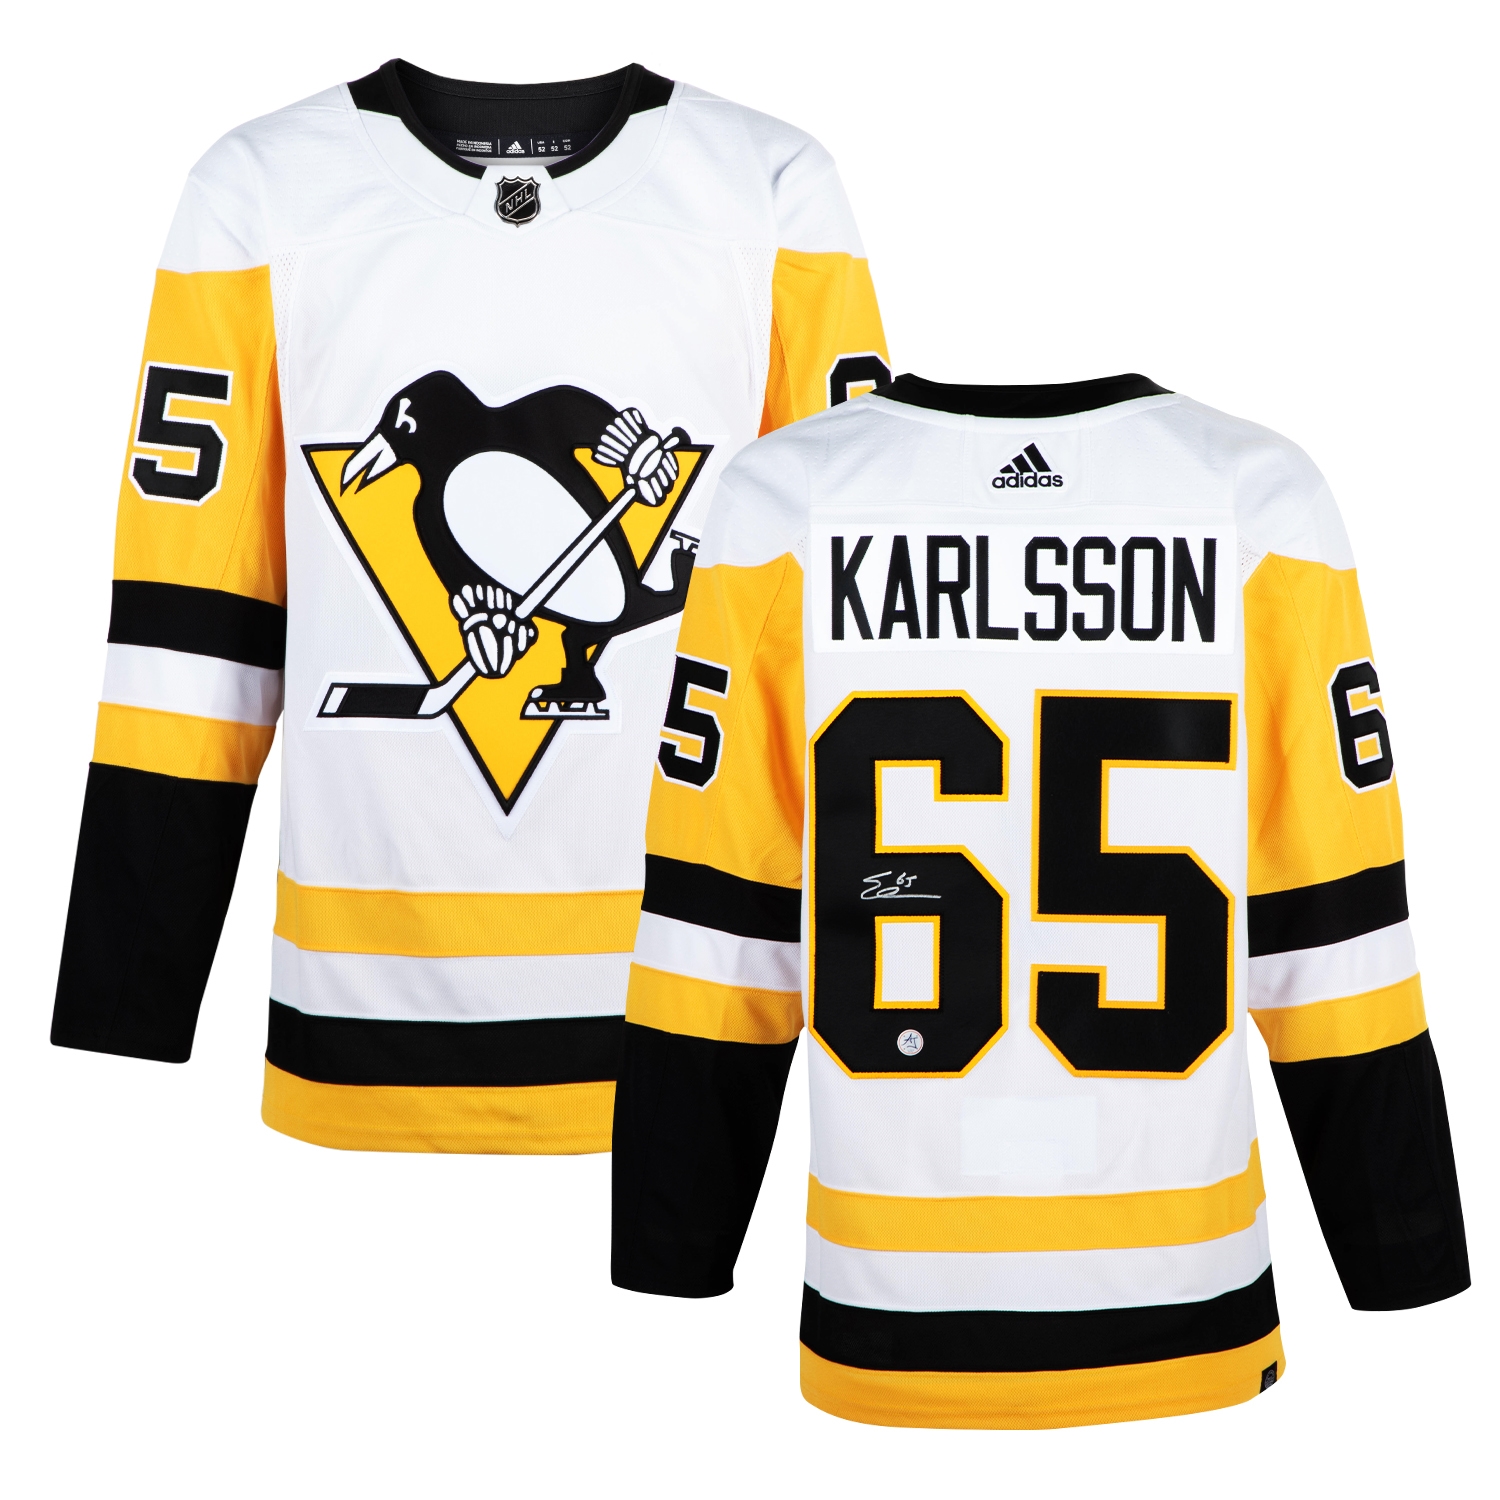 Erik Karlsson Signed Pittsburgh Penguins White adidas Jersey